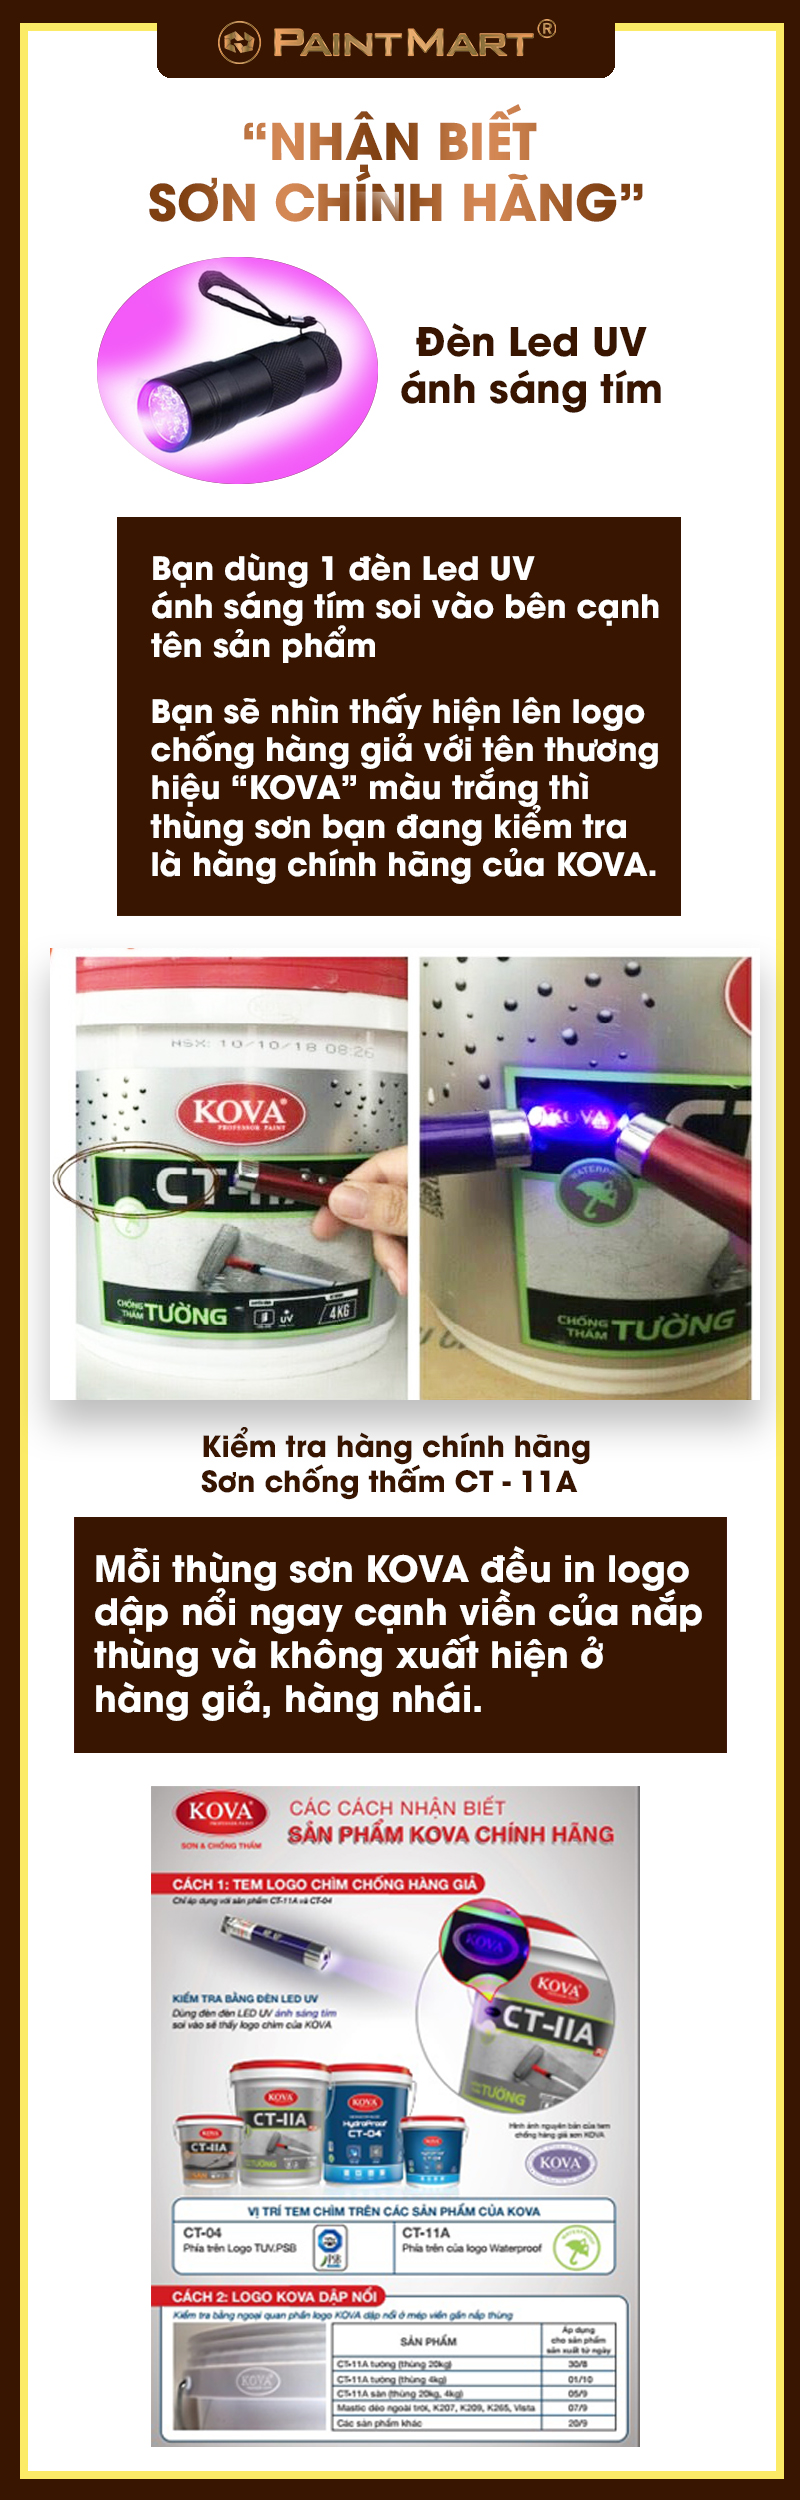 Đề phòng hàng giả, bạn hãy tìm đến nhà sản xuất sơn Kova uy tín của chúng tôi để sử dụng sản phẩm chất lượng. Chỉ với một số điều kiện đơn giản, bạn sẽ an tâm hơn khi chọn mua sơn Kova.